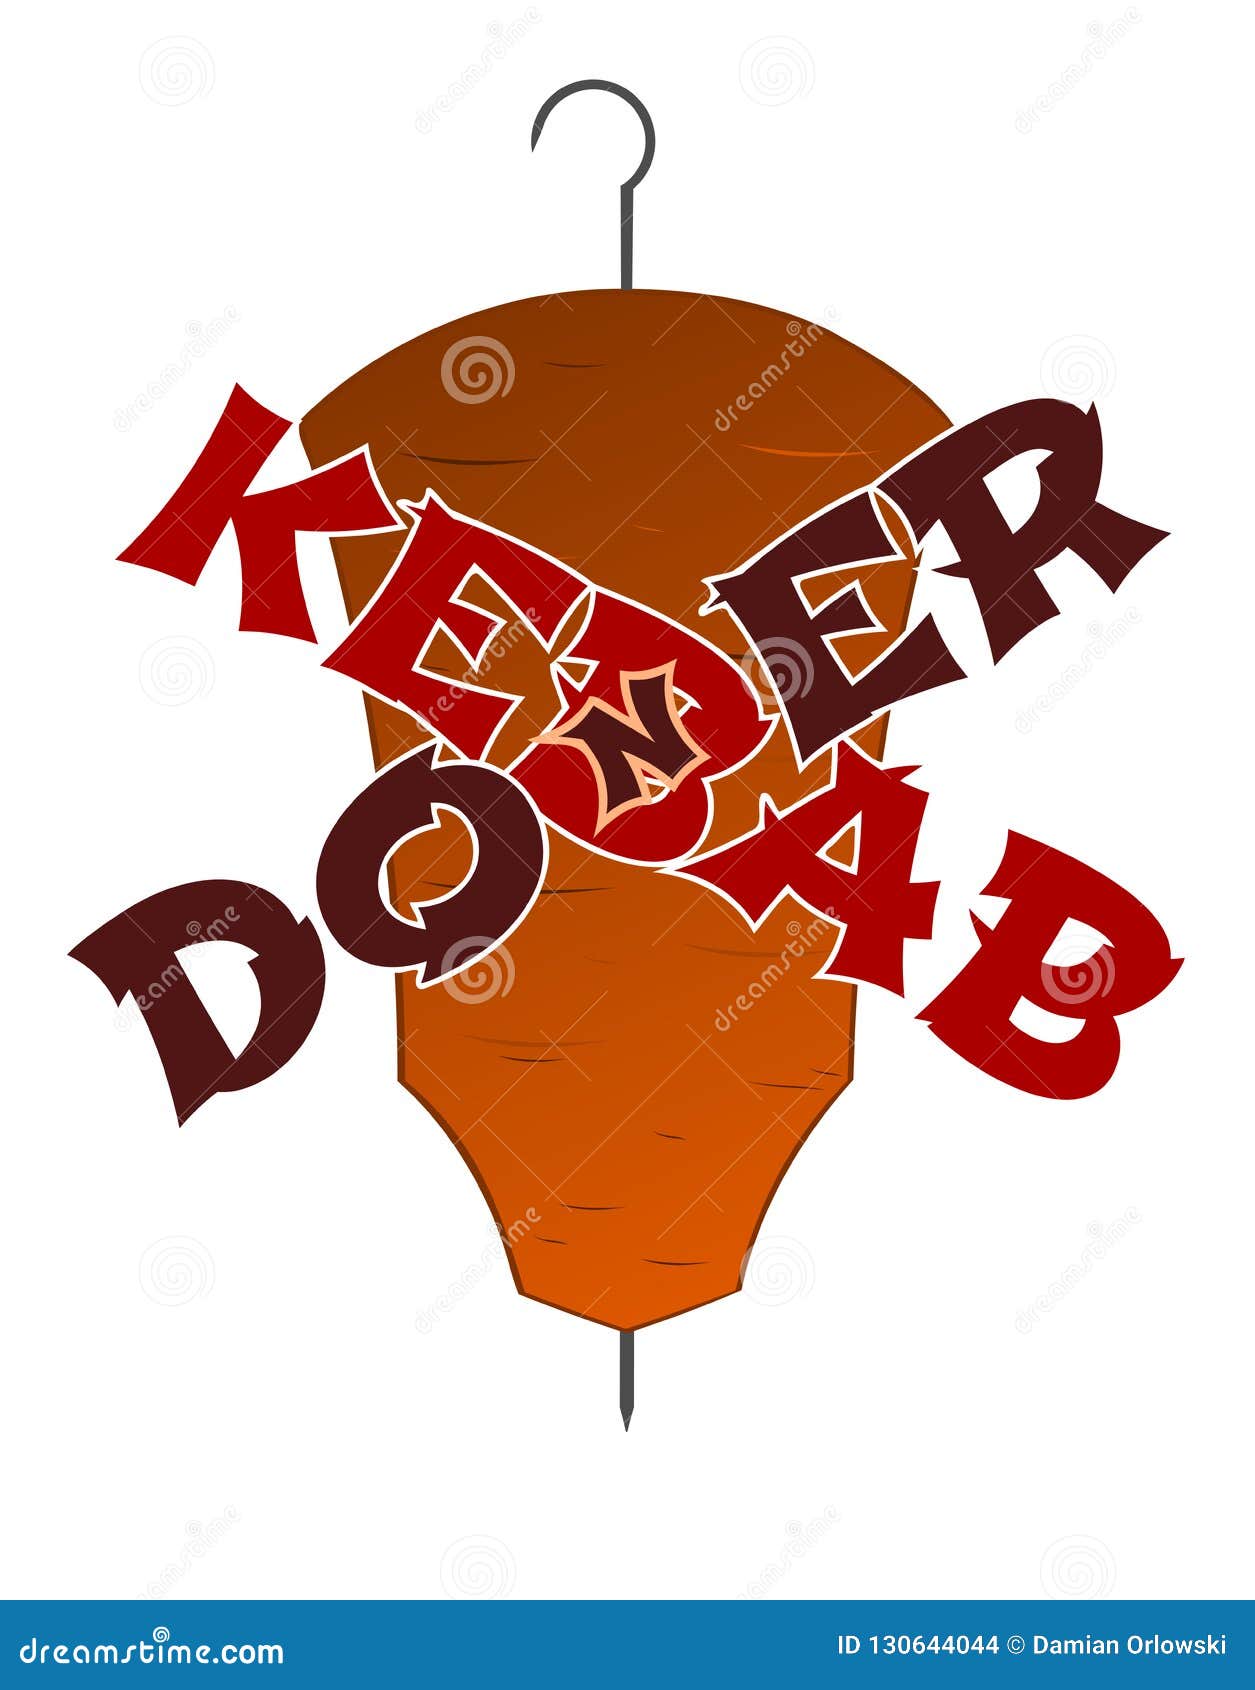 doner-kebab-crossed-words-logo-graphics-contours-meat-hook-caption-background-130644044.jpg